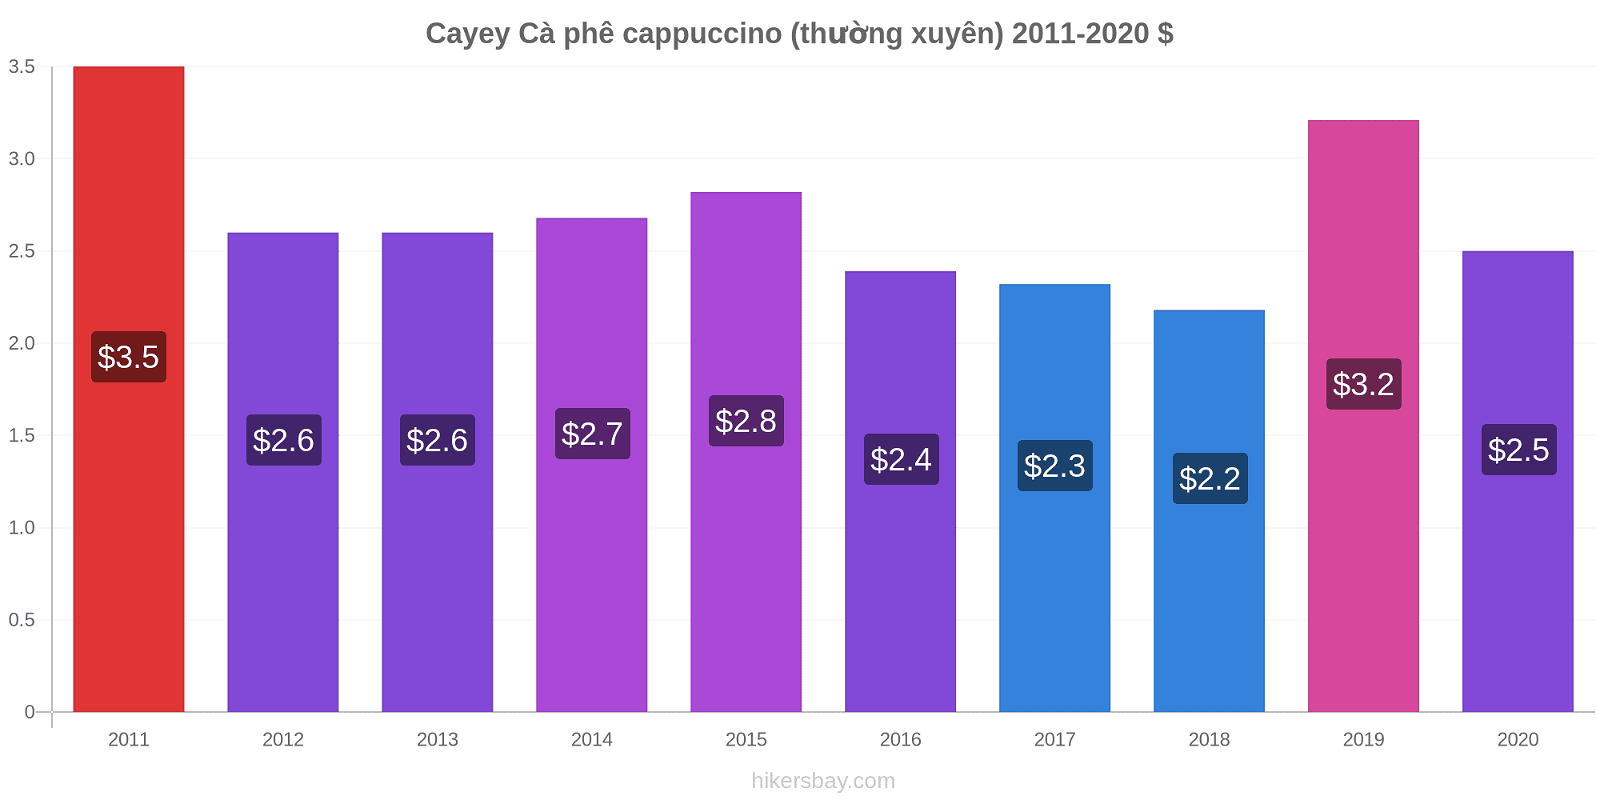 Cayey thay đổi giá Cà phê cappuccino (thường xuyên) hikersbay.com